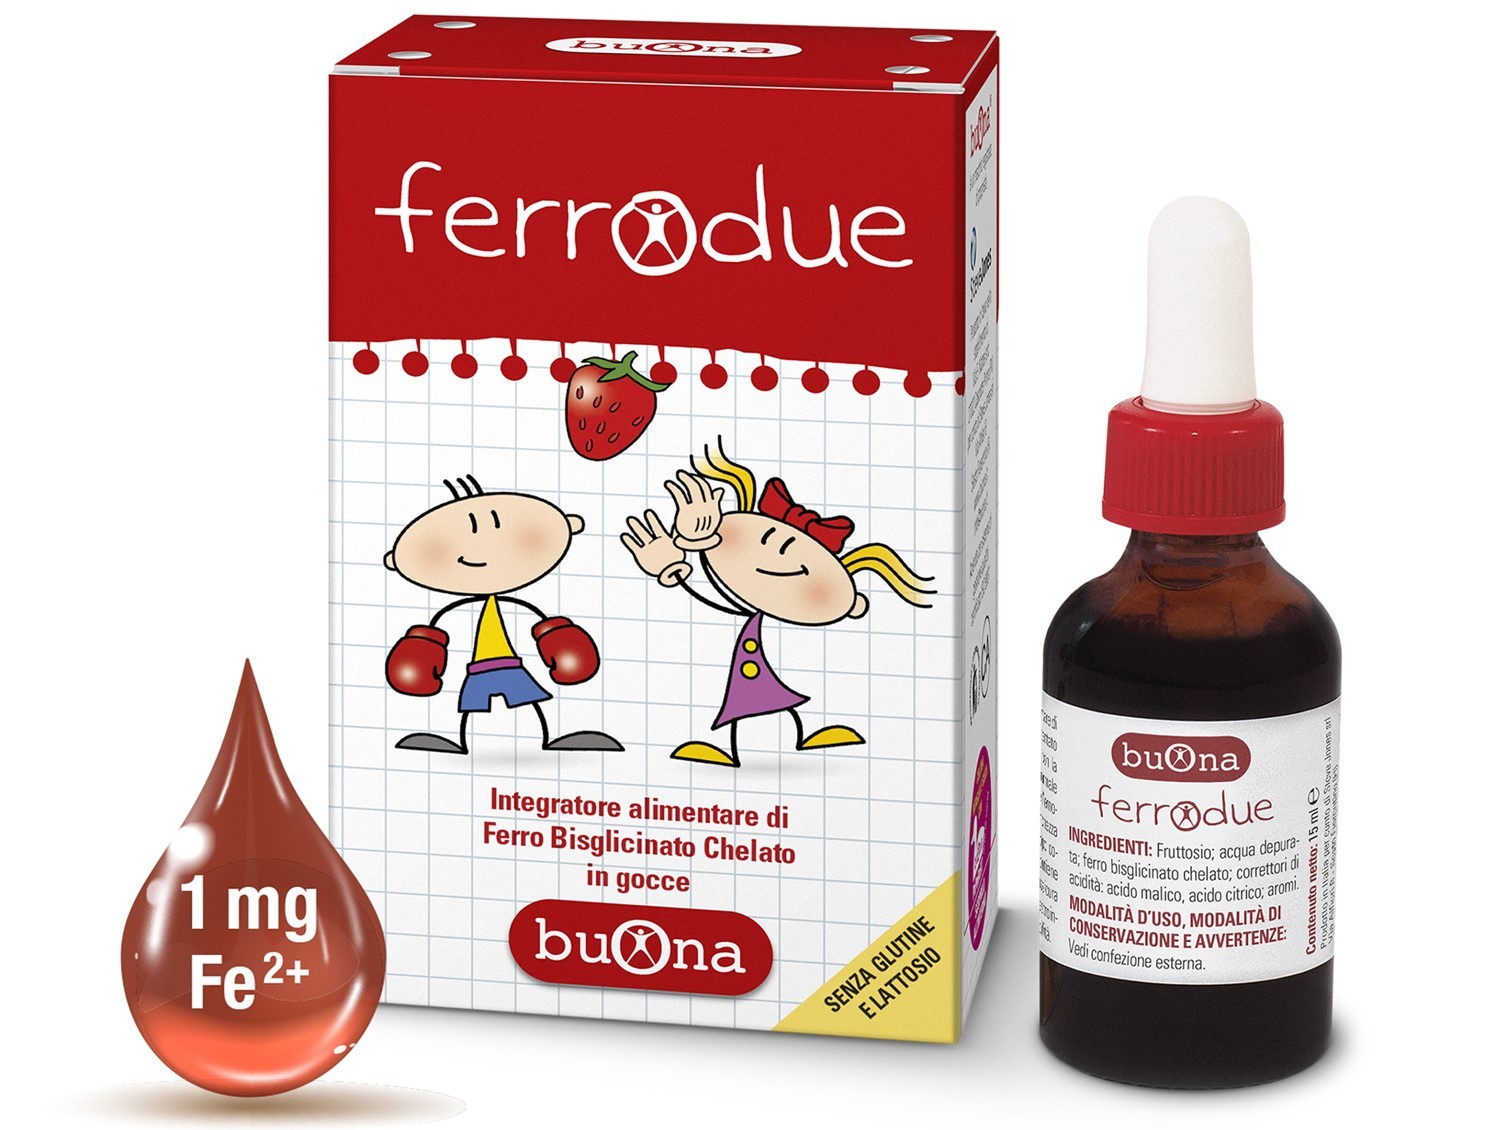 Ferrodue là sản phẩm của thương hiệu Buona đến từ Ý